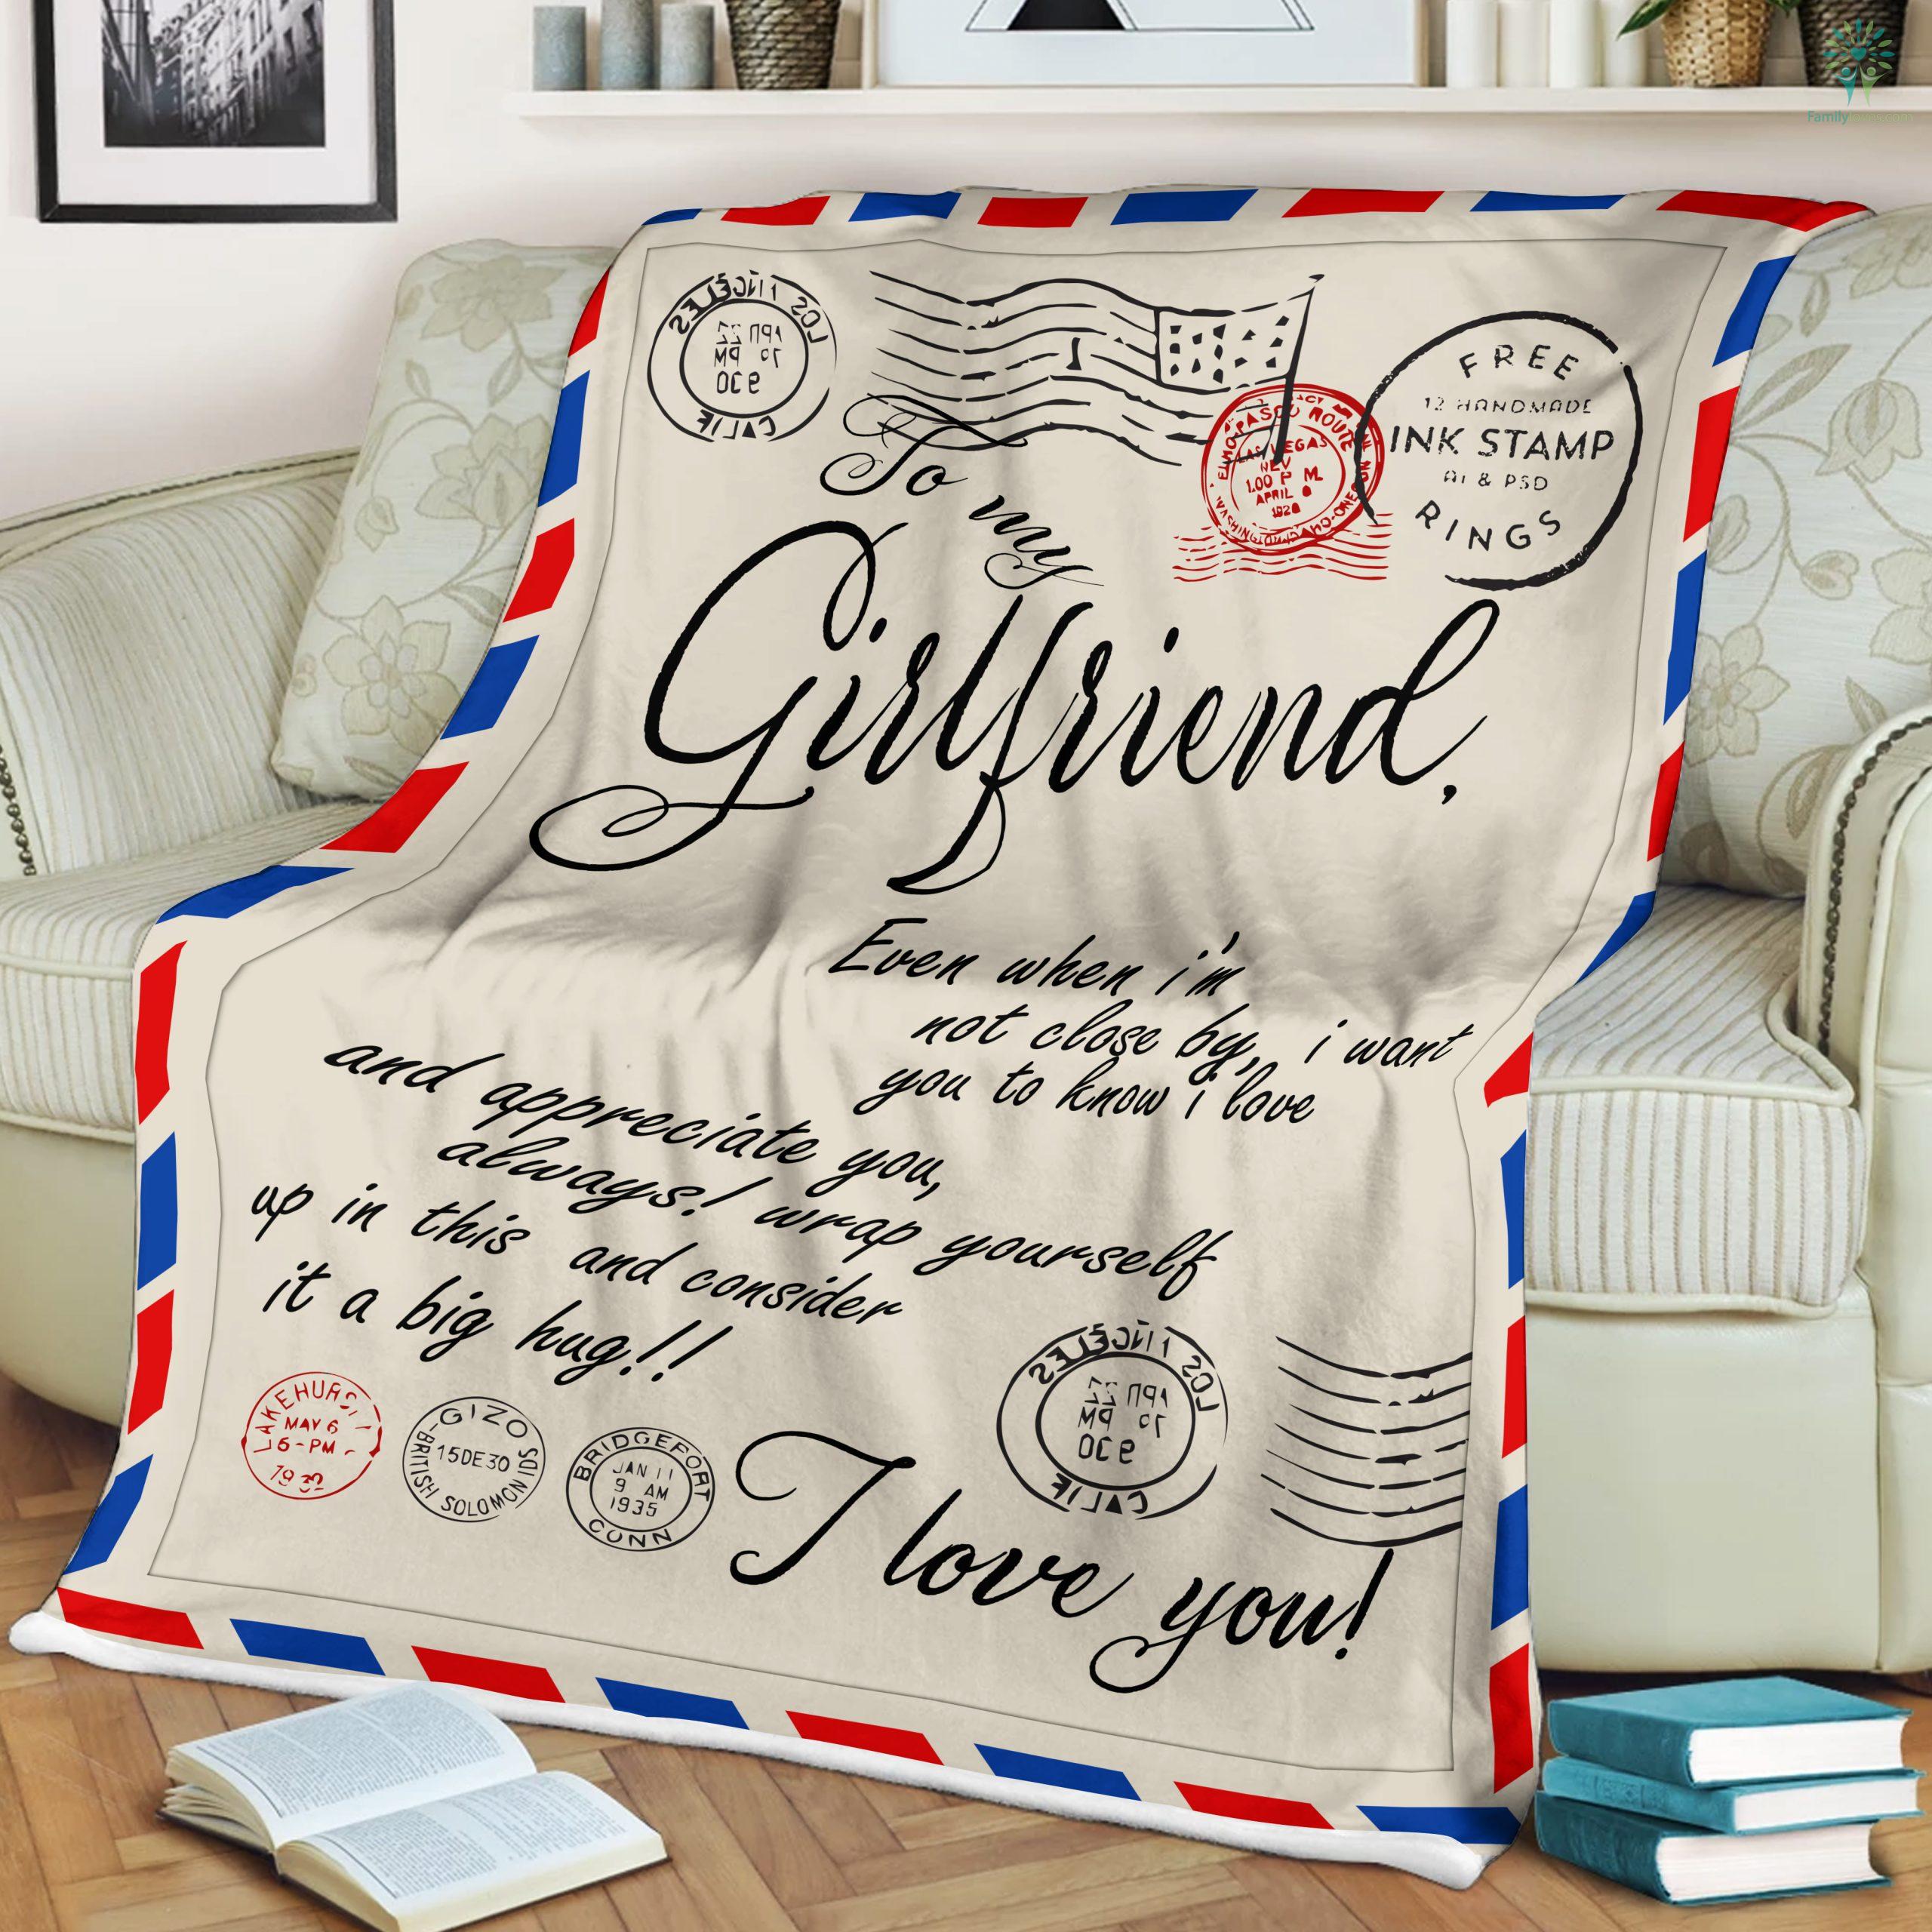 blanket gift for girlfriend